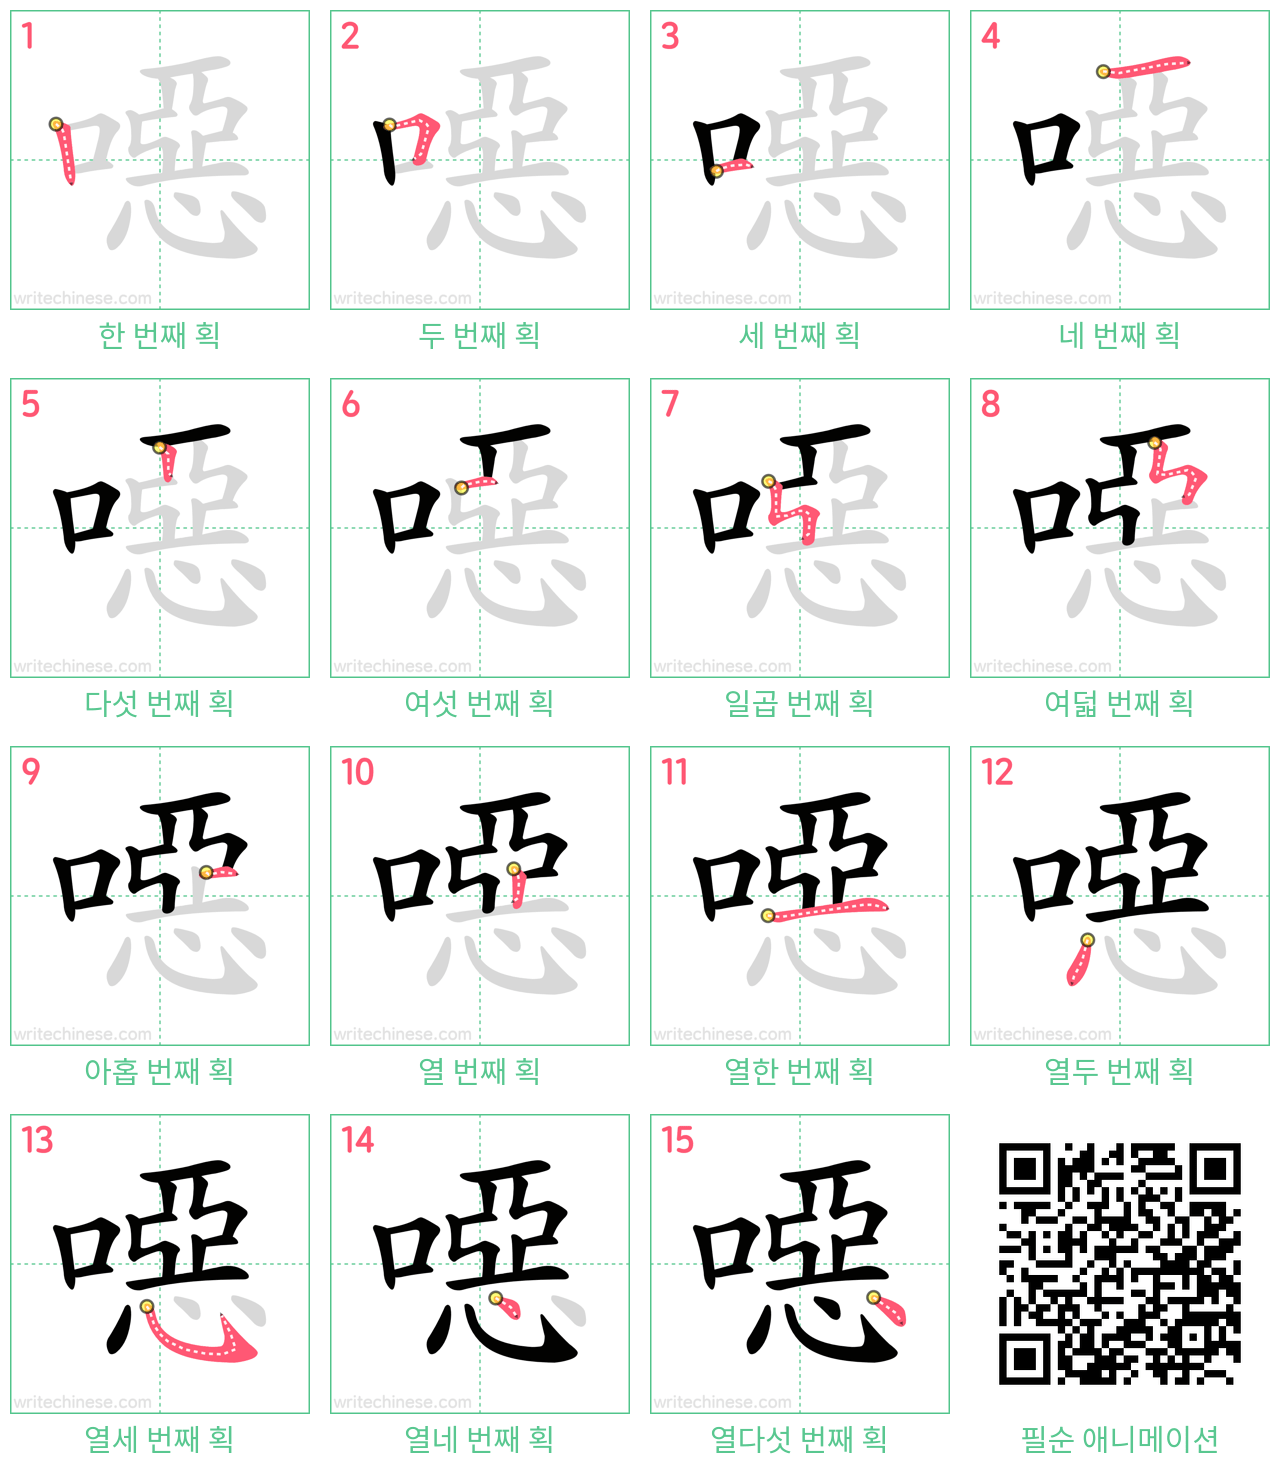 噁 step-by-step stroke order diagrams